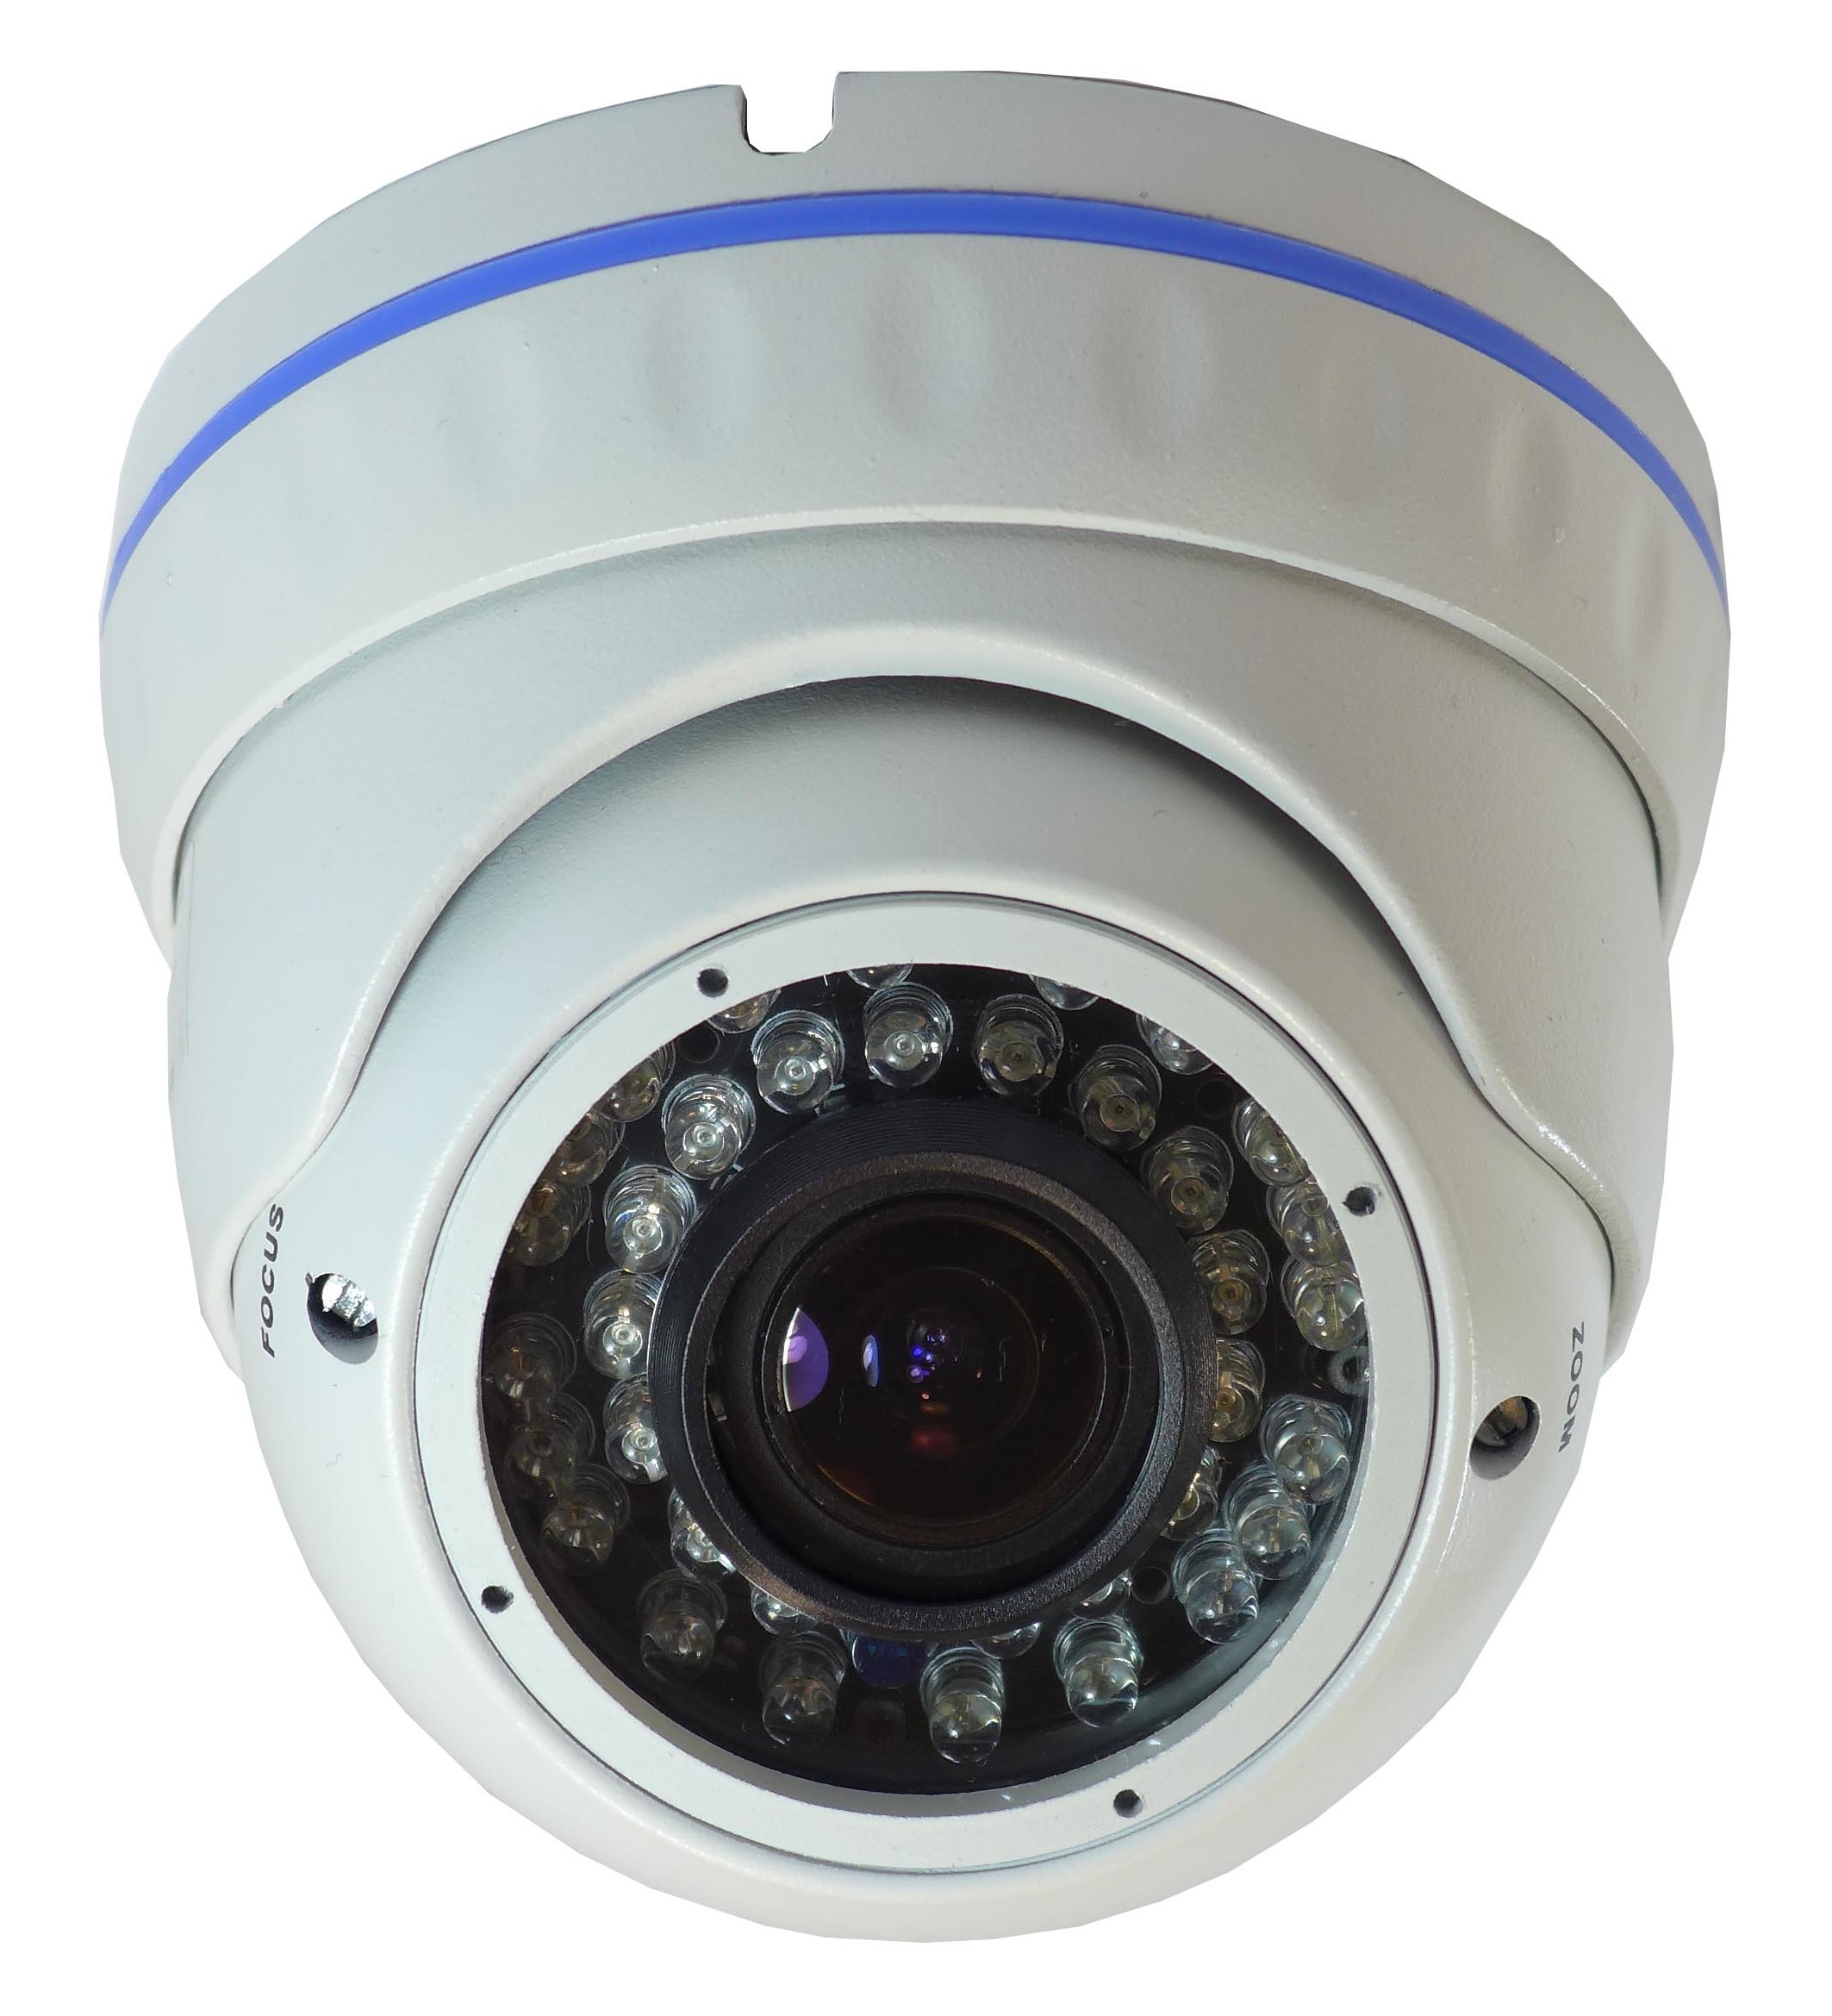 Biztonsági kamera IQC1080-mm-001